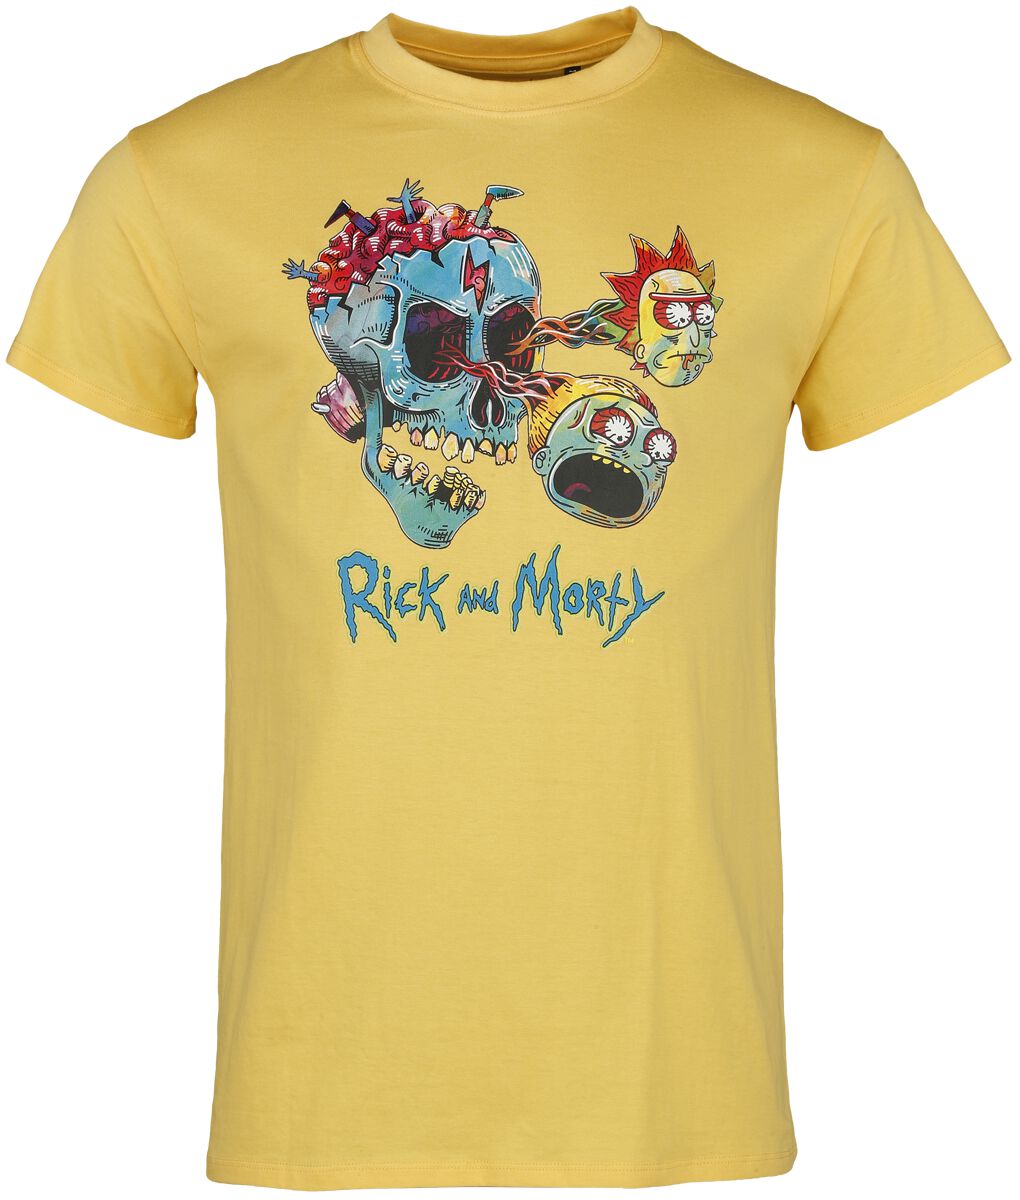 Rick And Morty T-Shirt - Summer Vibes - S bis XXL - für Männer - Größe S - gelb  - Lizenzierter Fanartikel